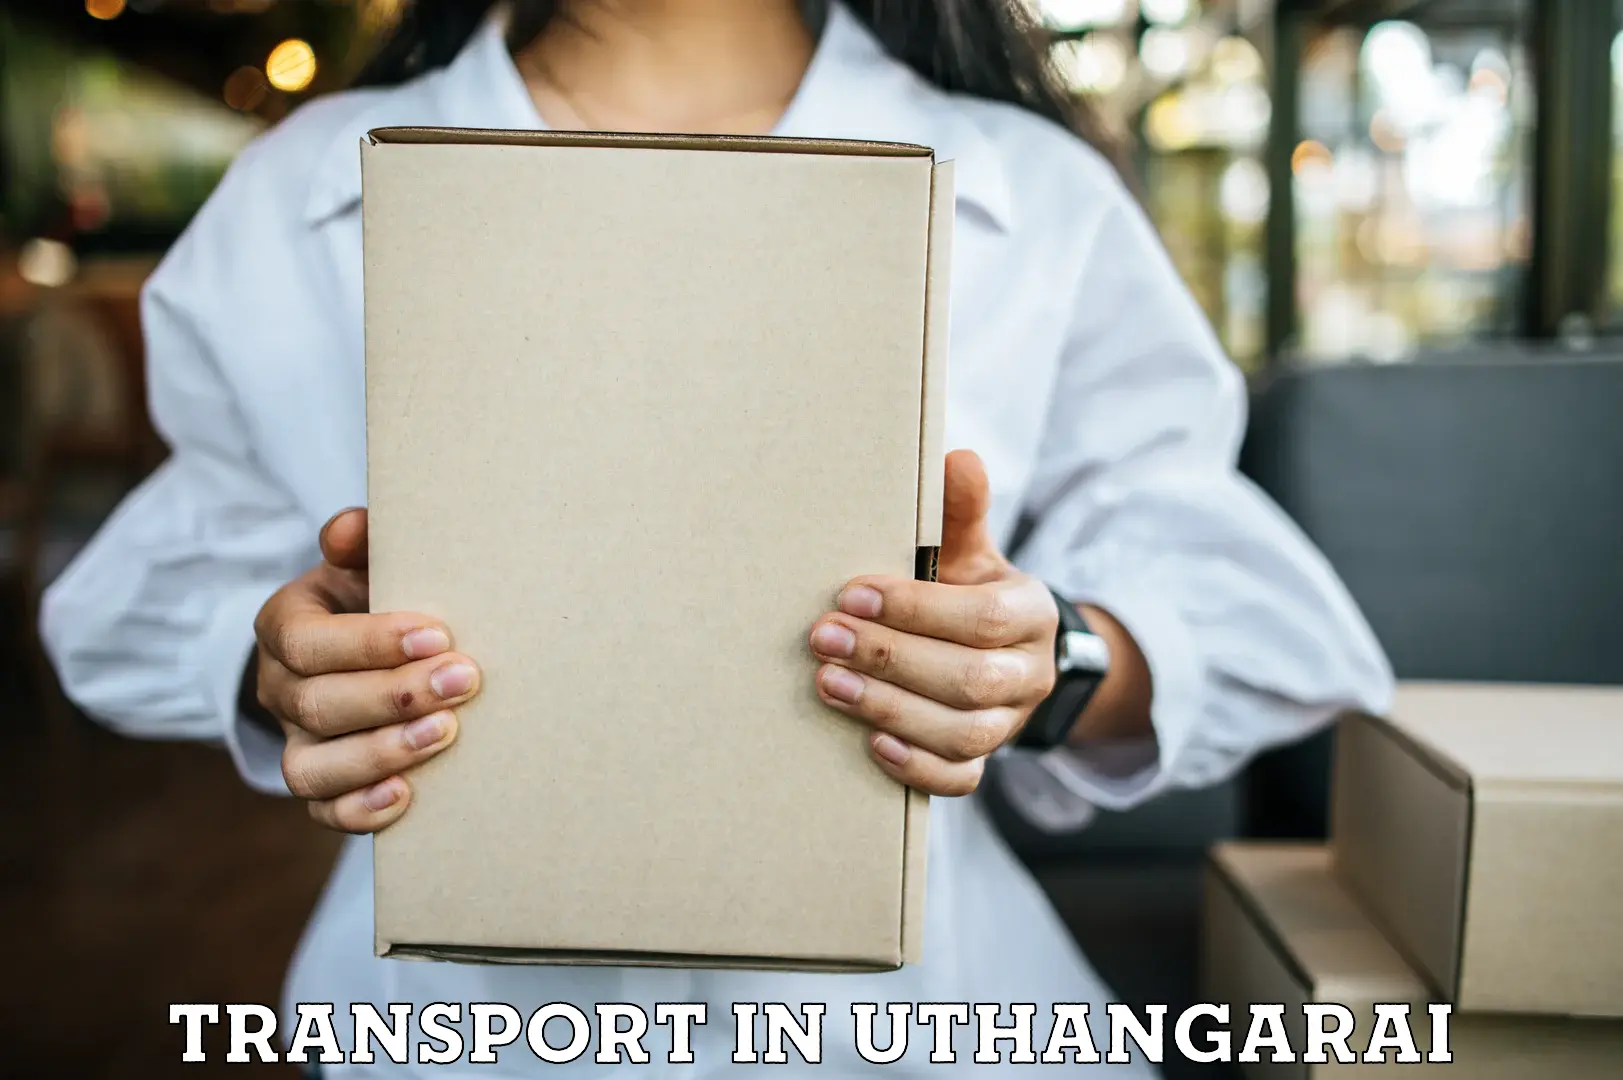 Intercity goods transport in Uthangarai